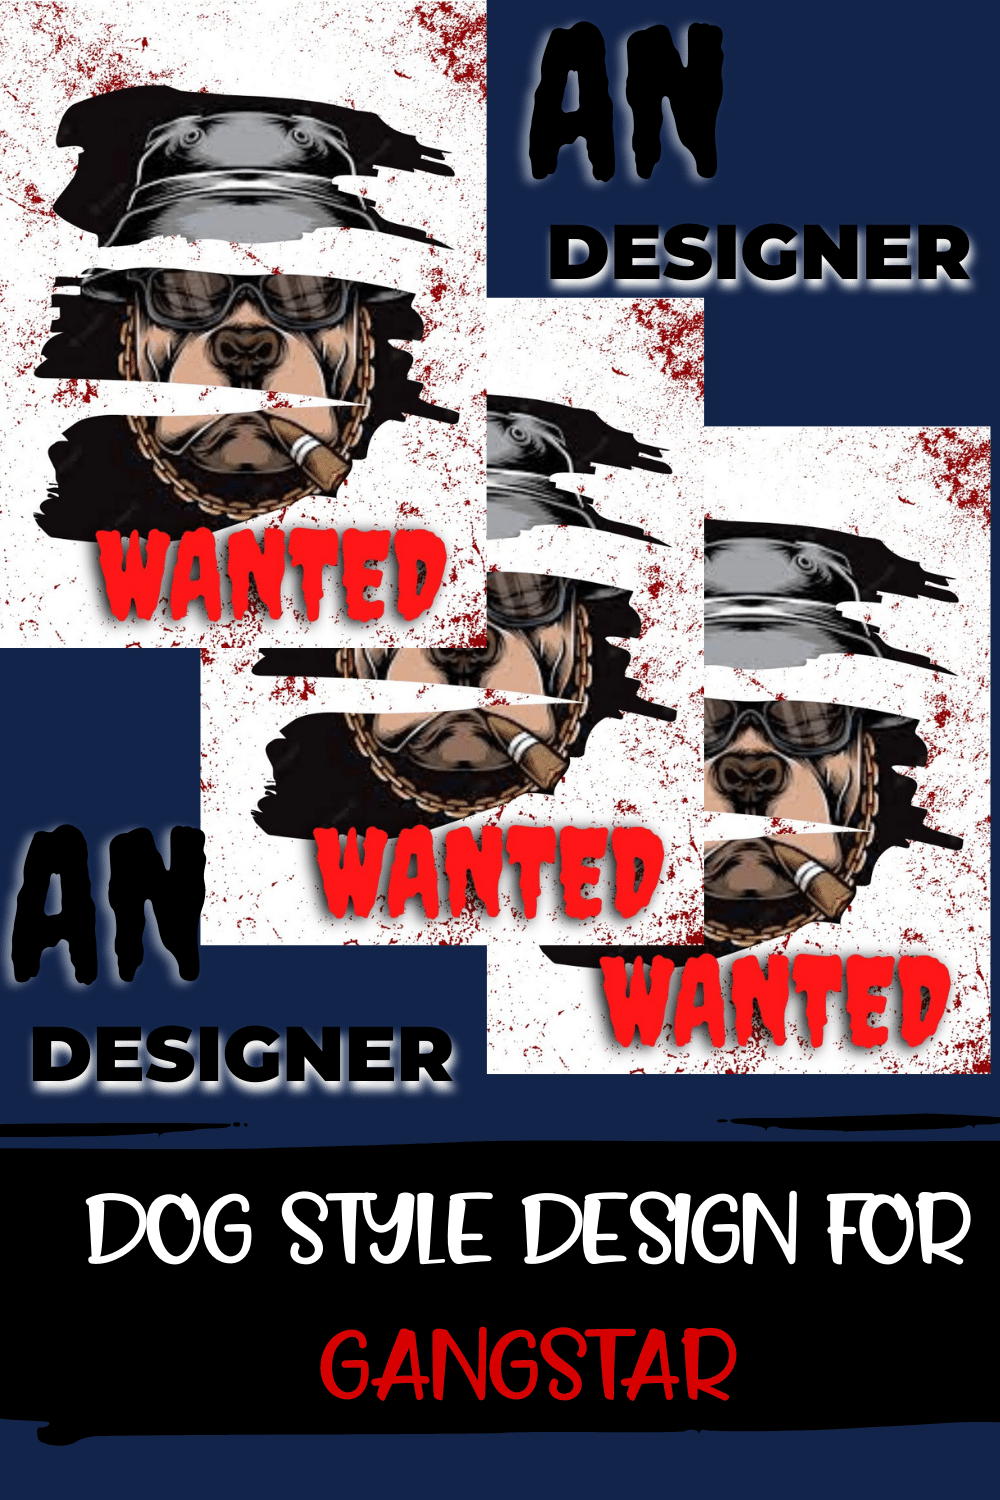 DOG STYLE DESIGN FOR GANGSTER pinterest image.